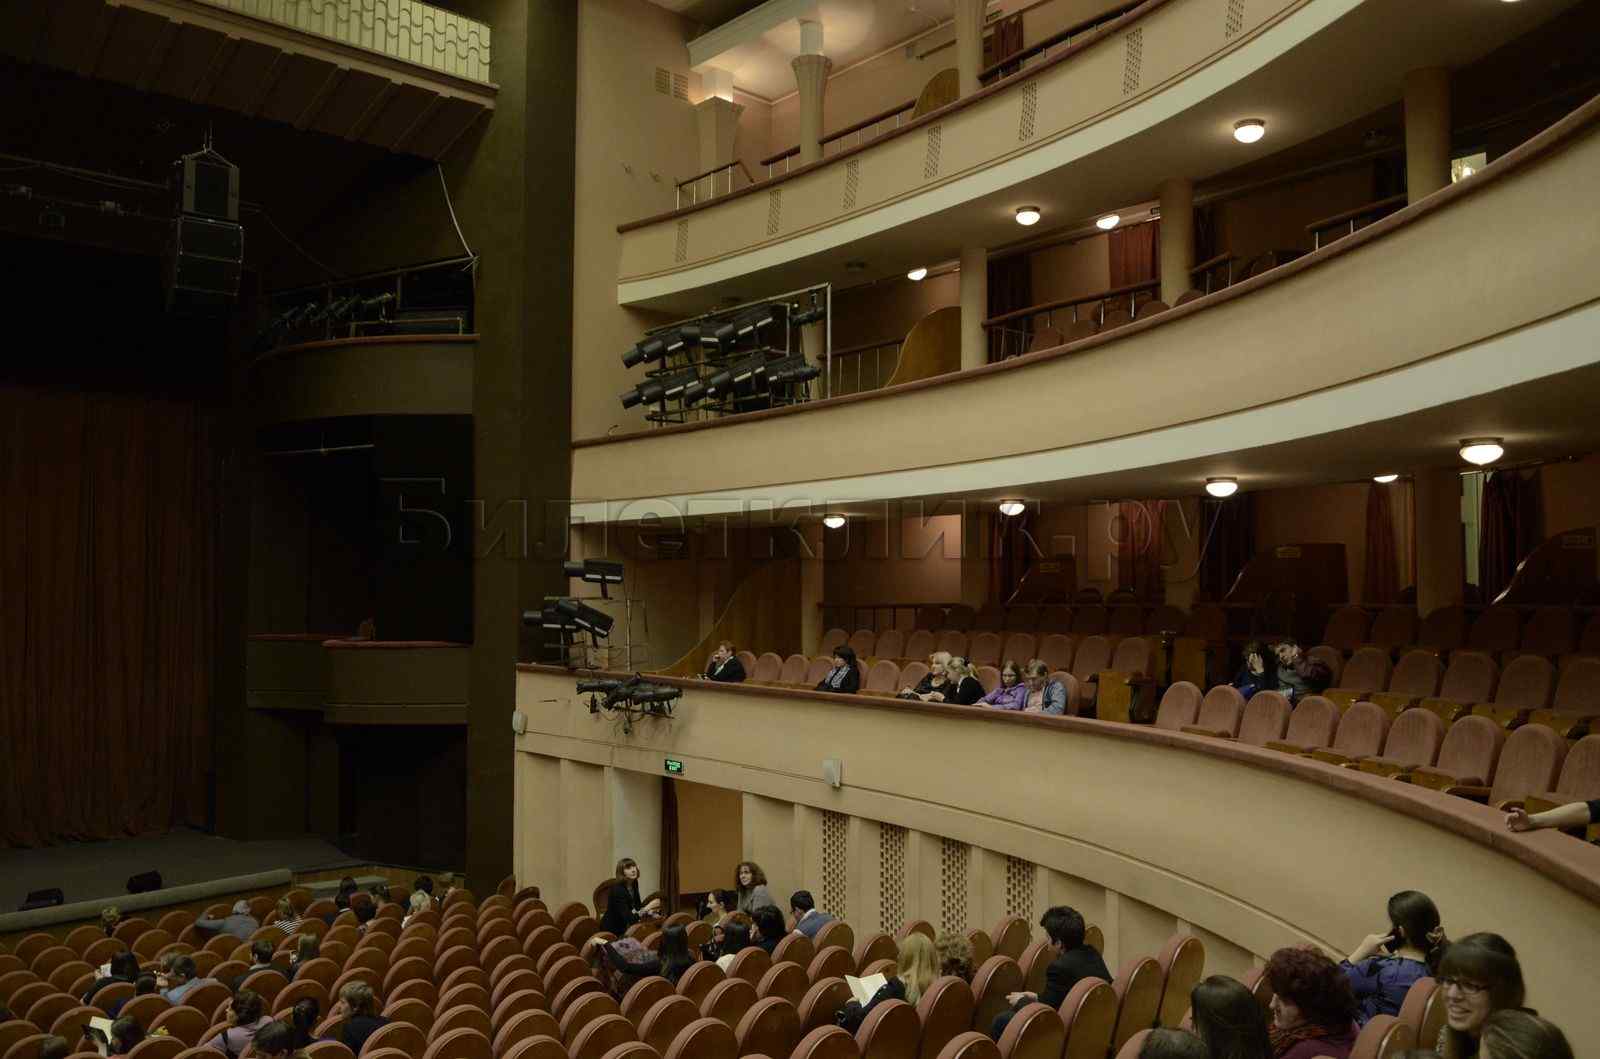 Театр Моссовета